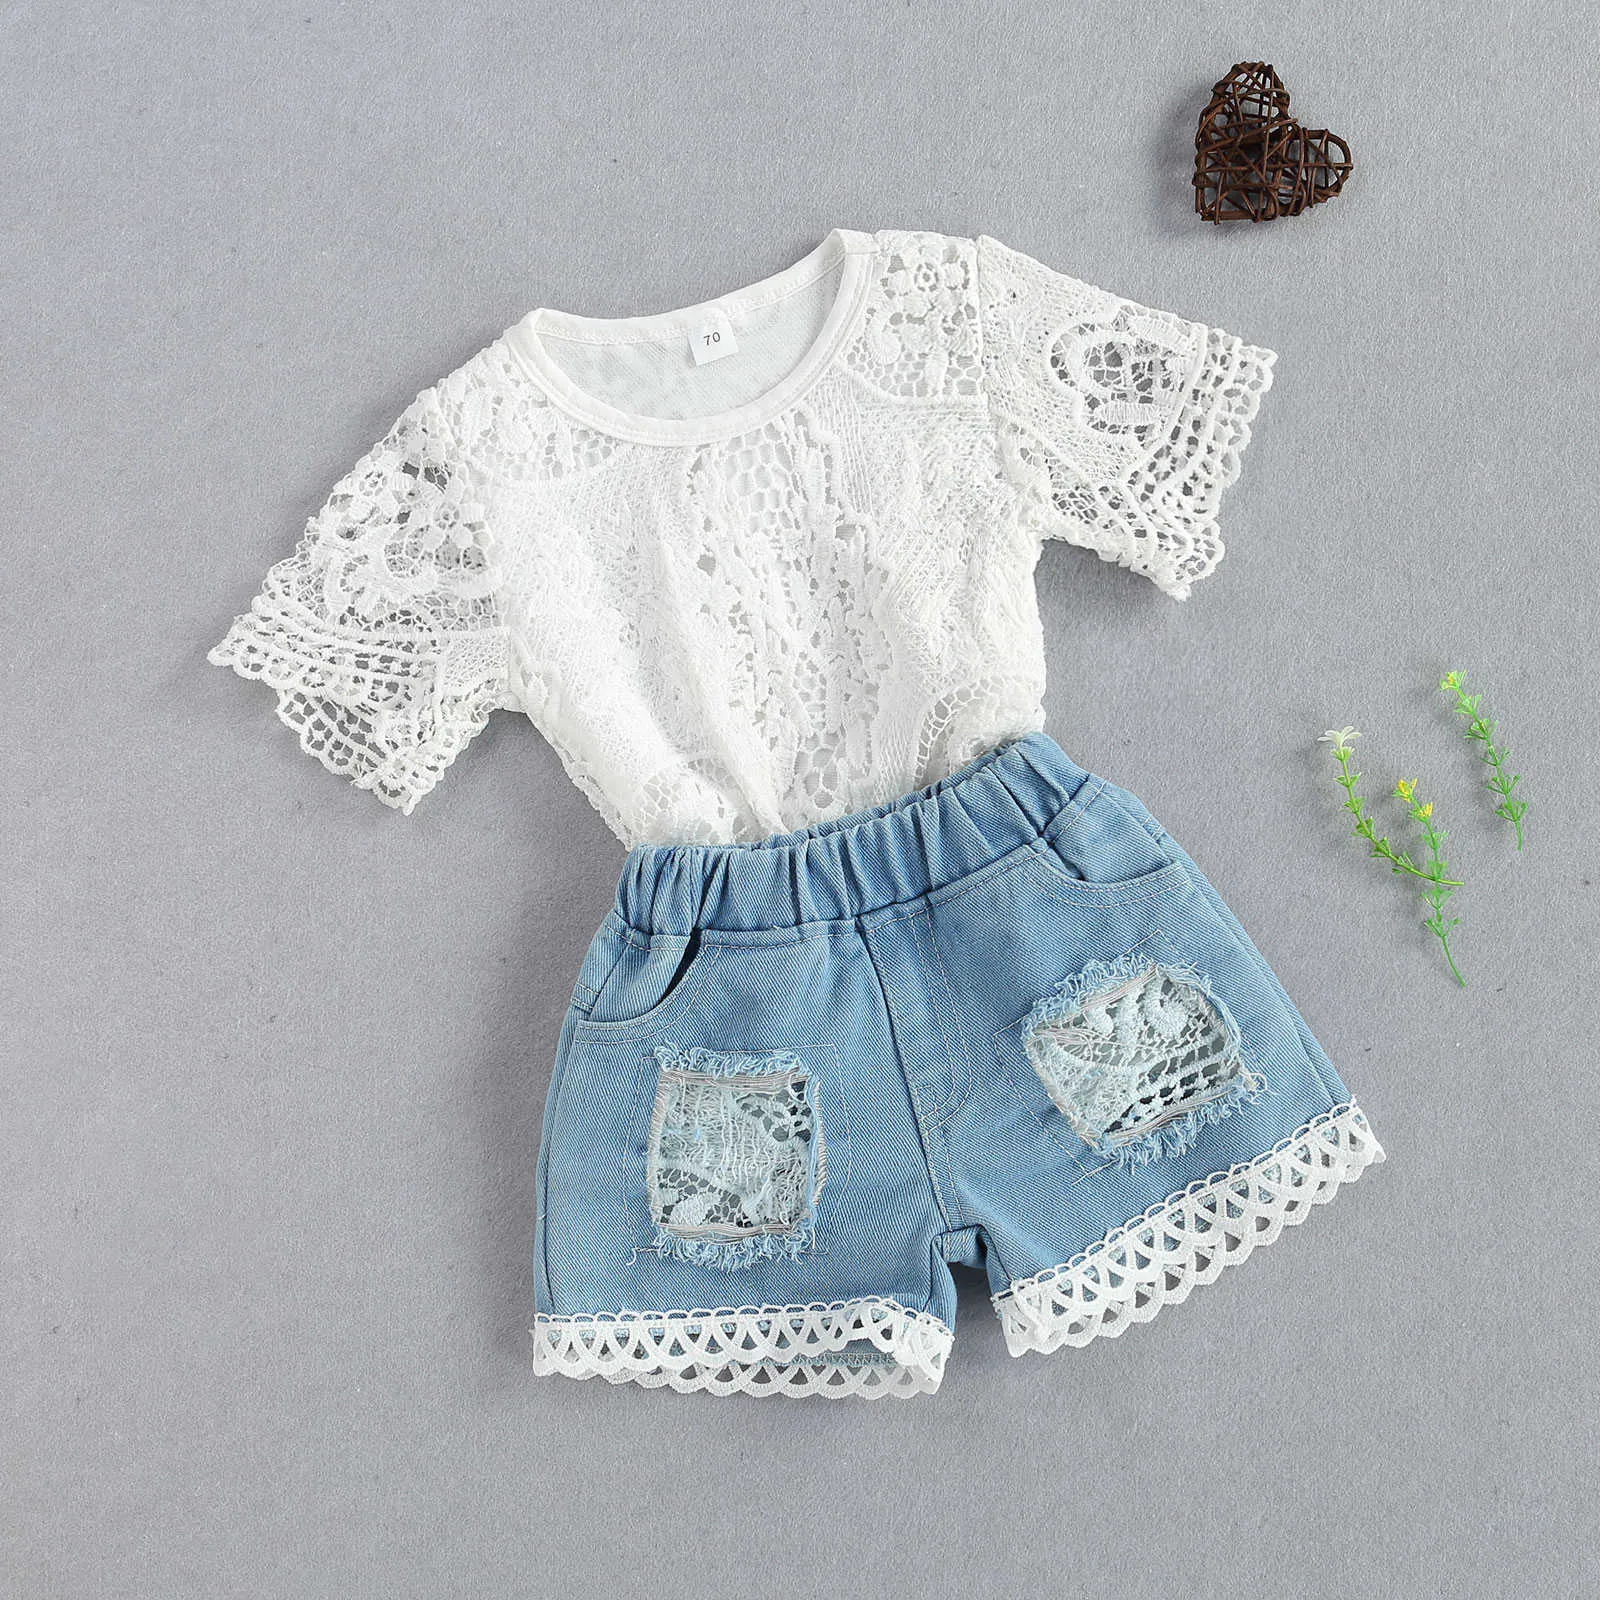 Ensembles de vêtements mode infantile nouveau-né bébé filles vêtements d'été ensembles fleurs blanches body haut short élastique 2 pièces